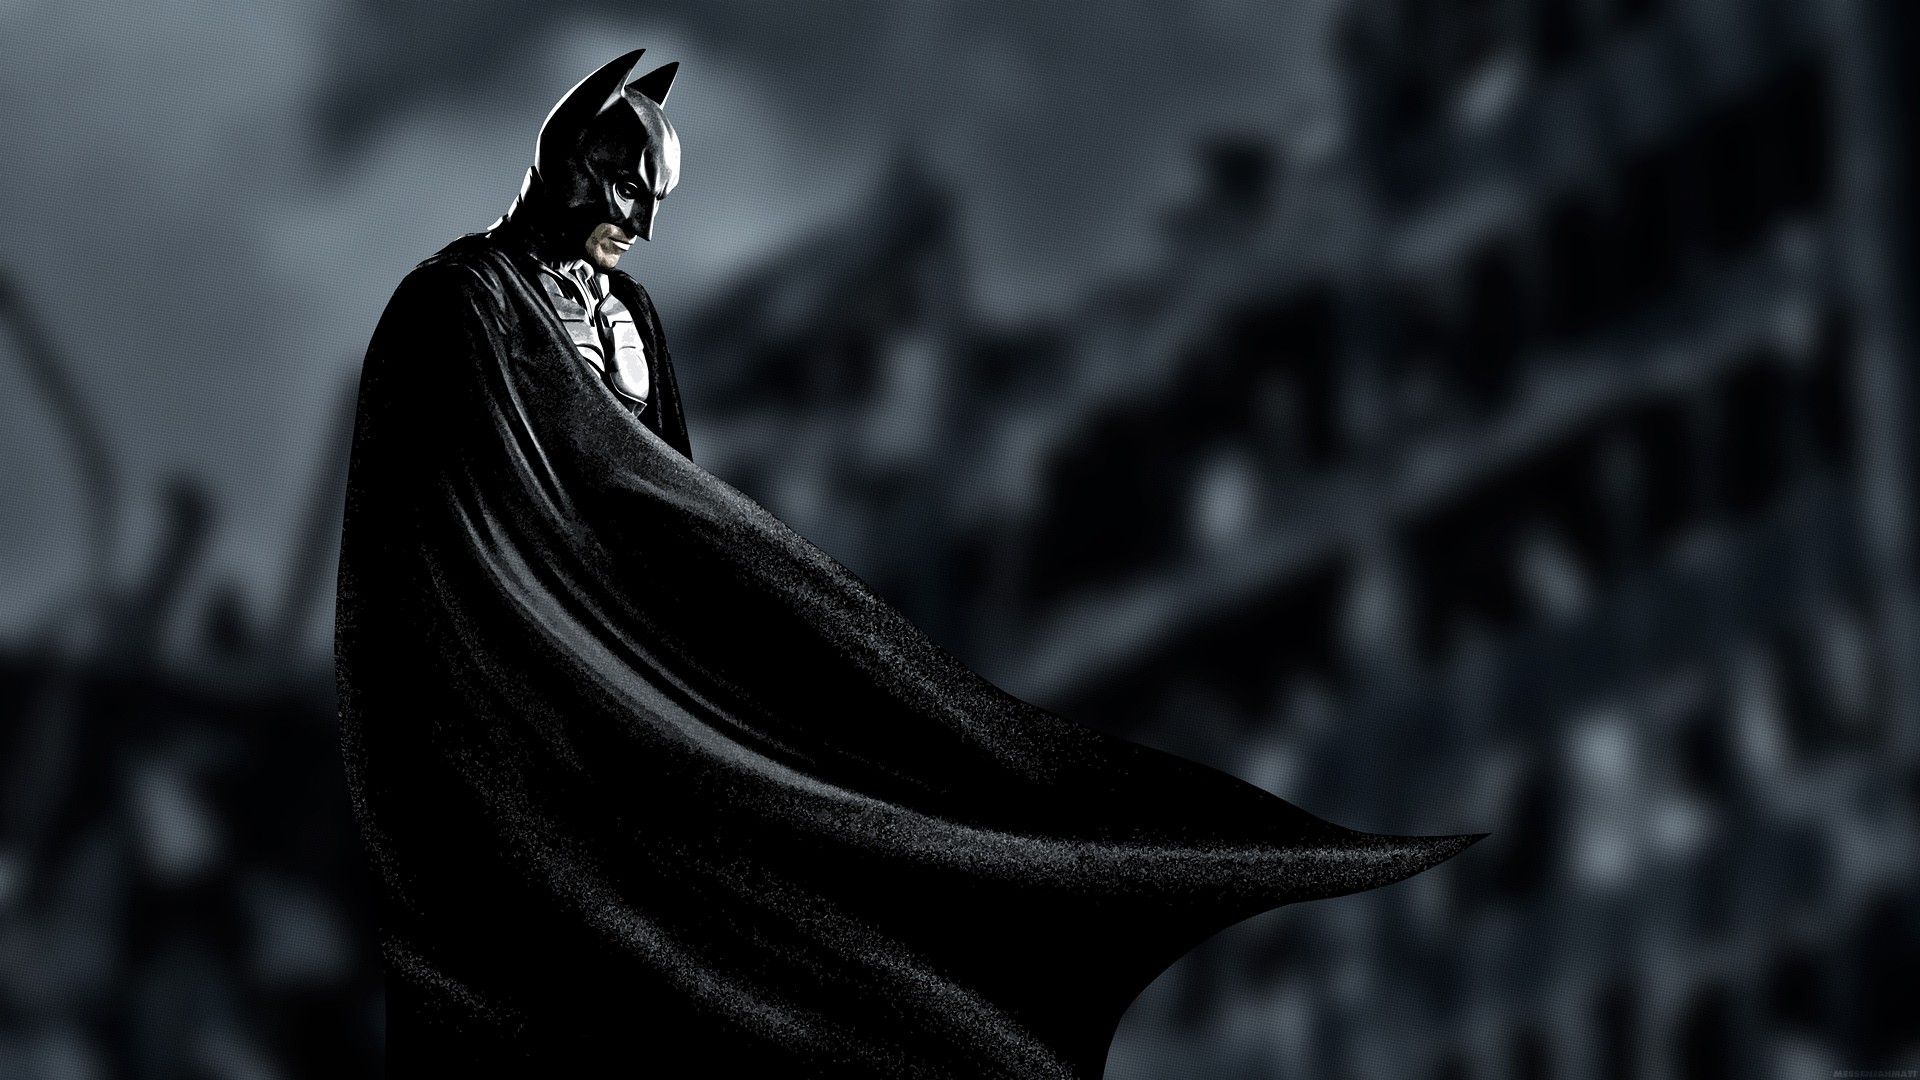 Batman, superheroes, Christian Bale, Batman The Dark Knight Rises